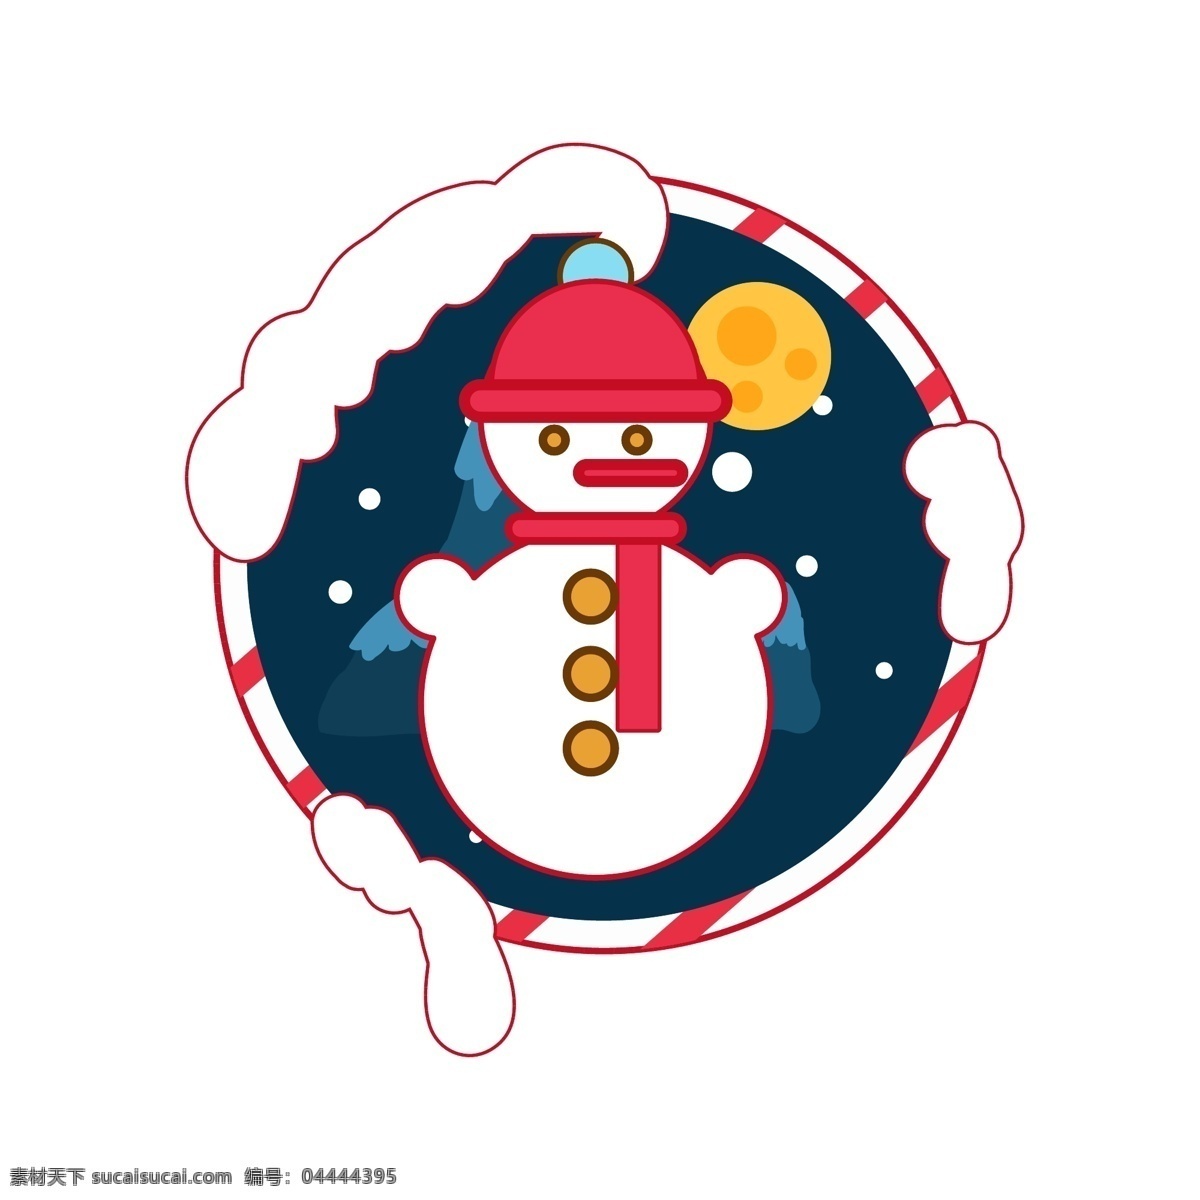 圣诞节 元素 装饰 图标 雪人 蝴蝶结 铃铛 雪花 节日 山 条纹